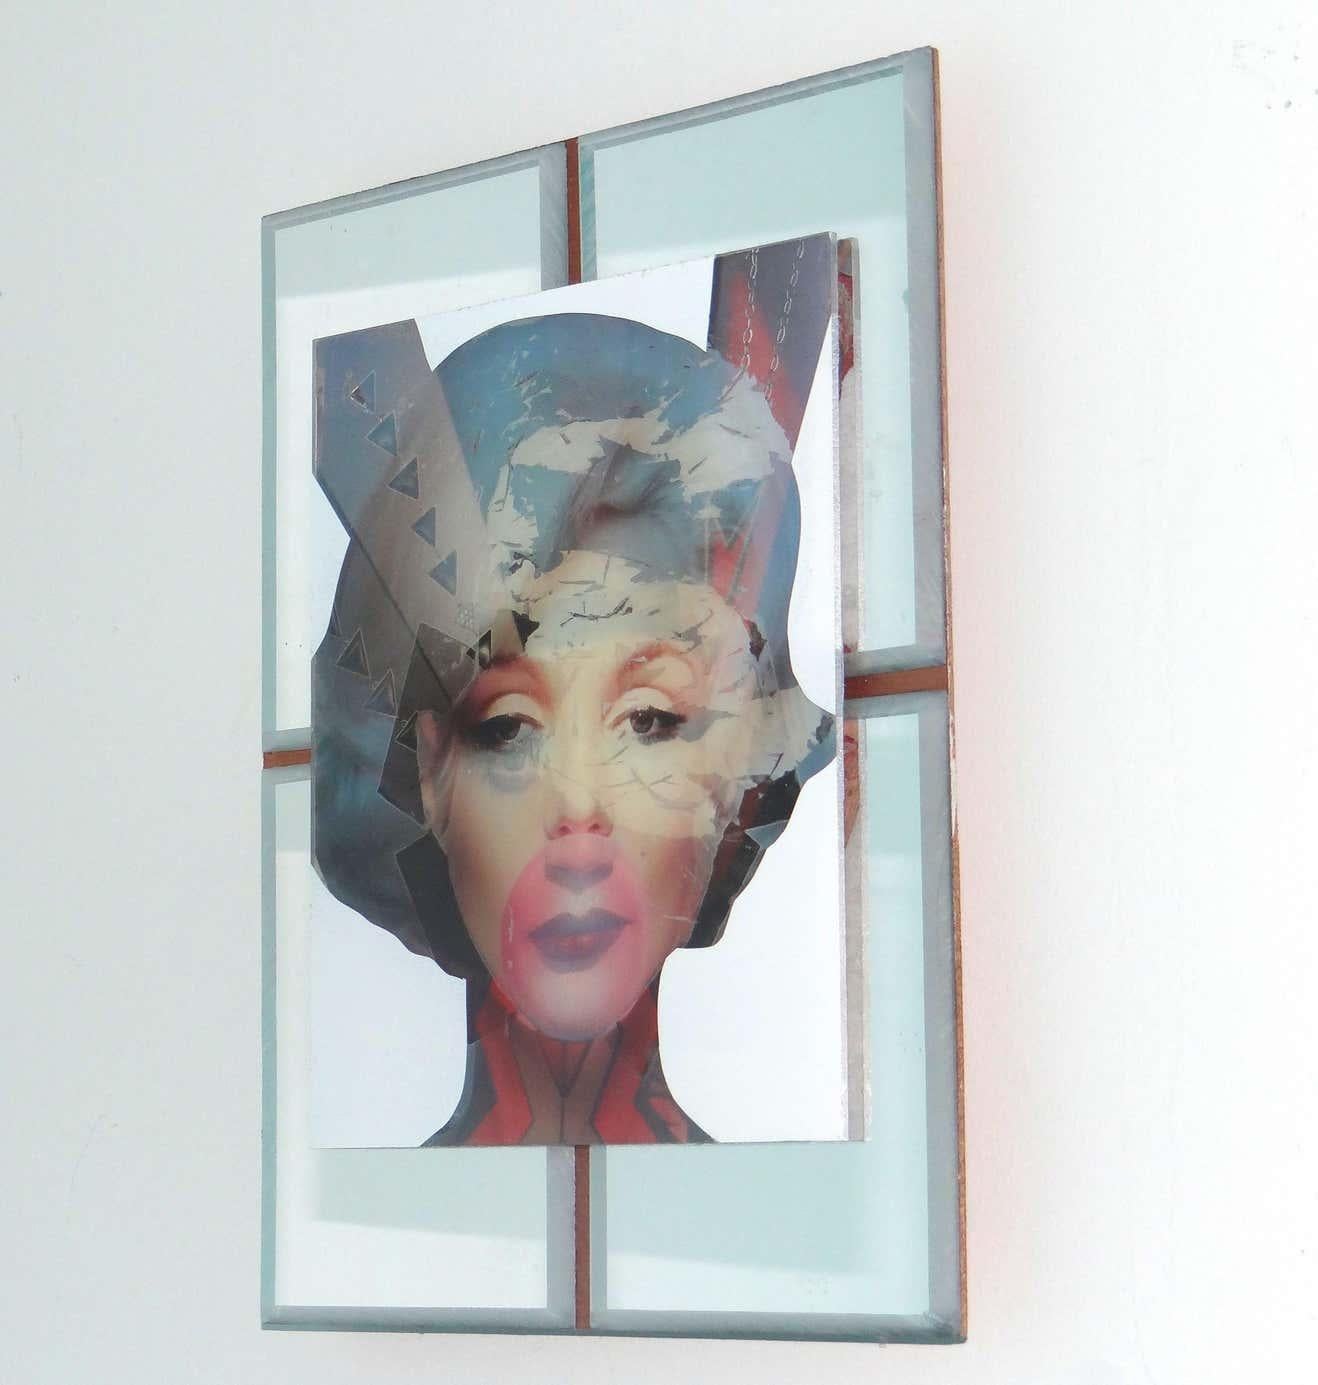 « Marilyn Monroe », image abstraite technique mixte sur bois avec incrustation de miroir - Moderne Art par Carlos Alejandro